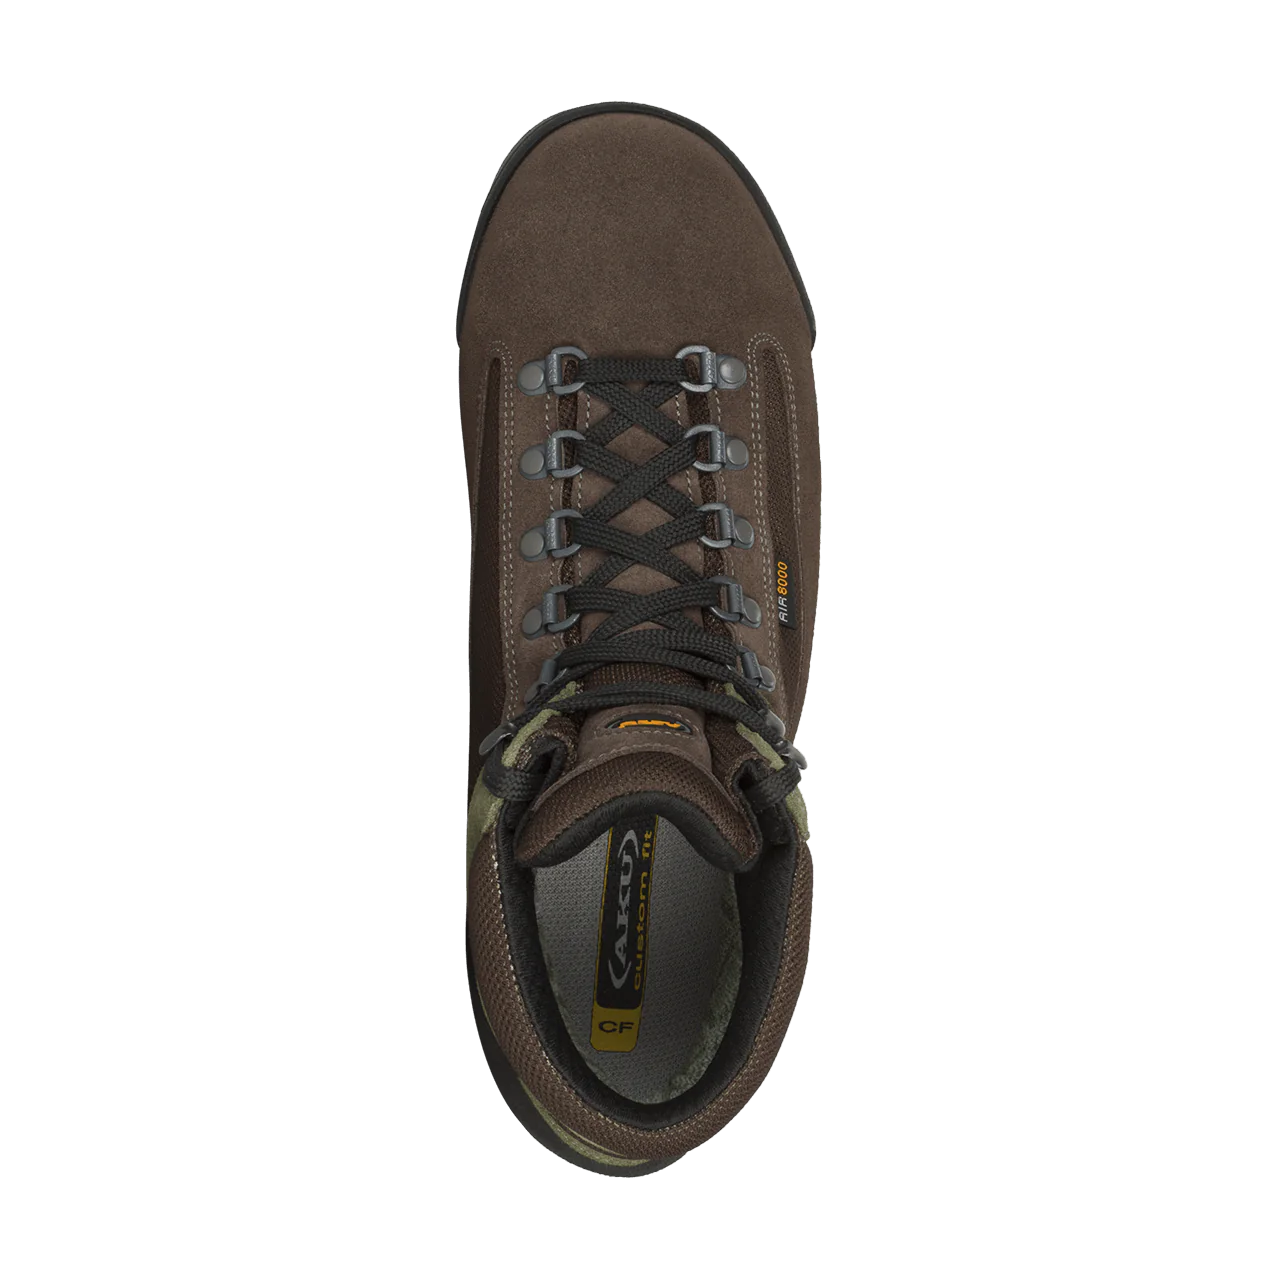 AKU Men's Slope Original GTX Hiking Boots